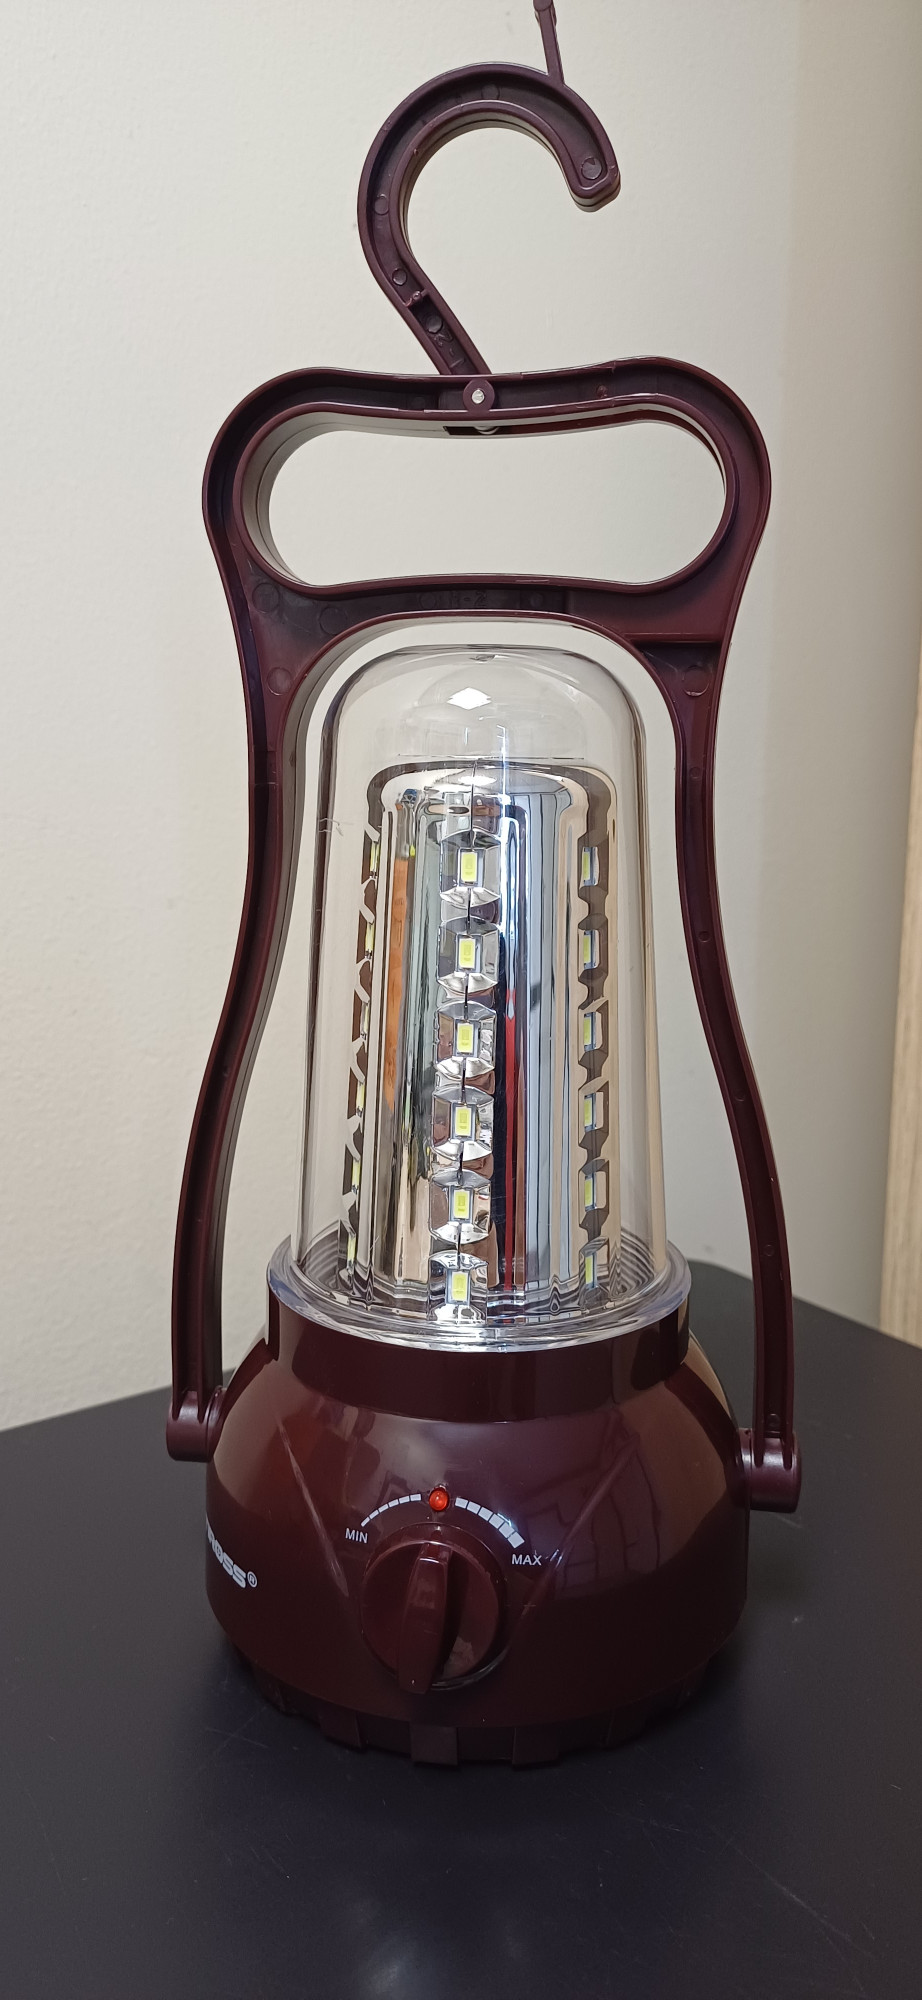 Фонарь-лампа Tiross TS-690-2 аккумуляторная 2